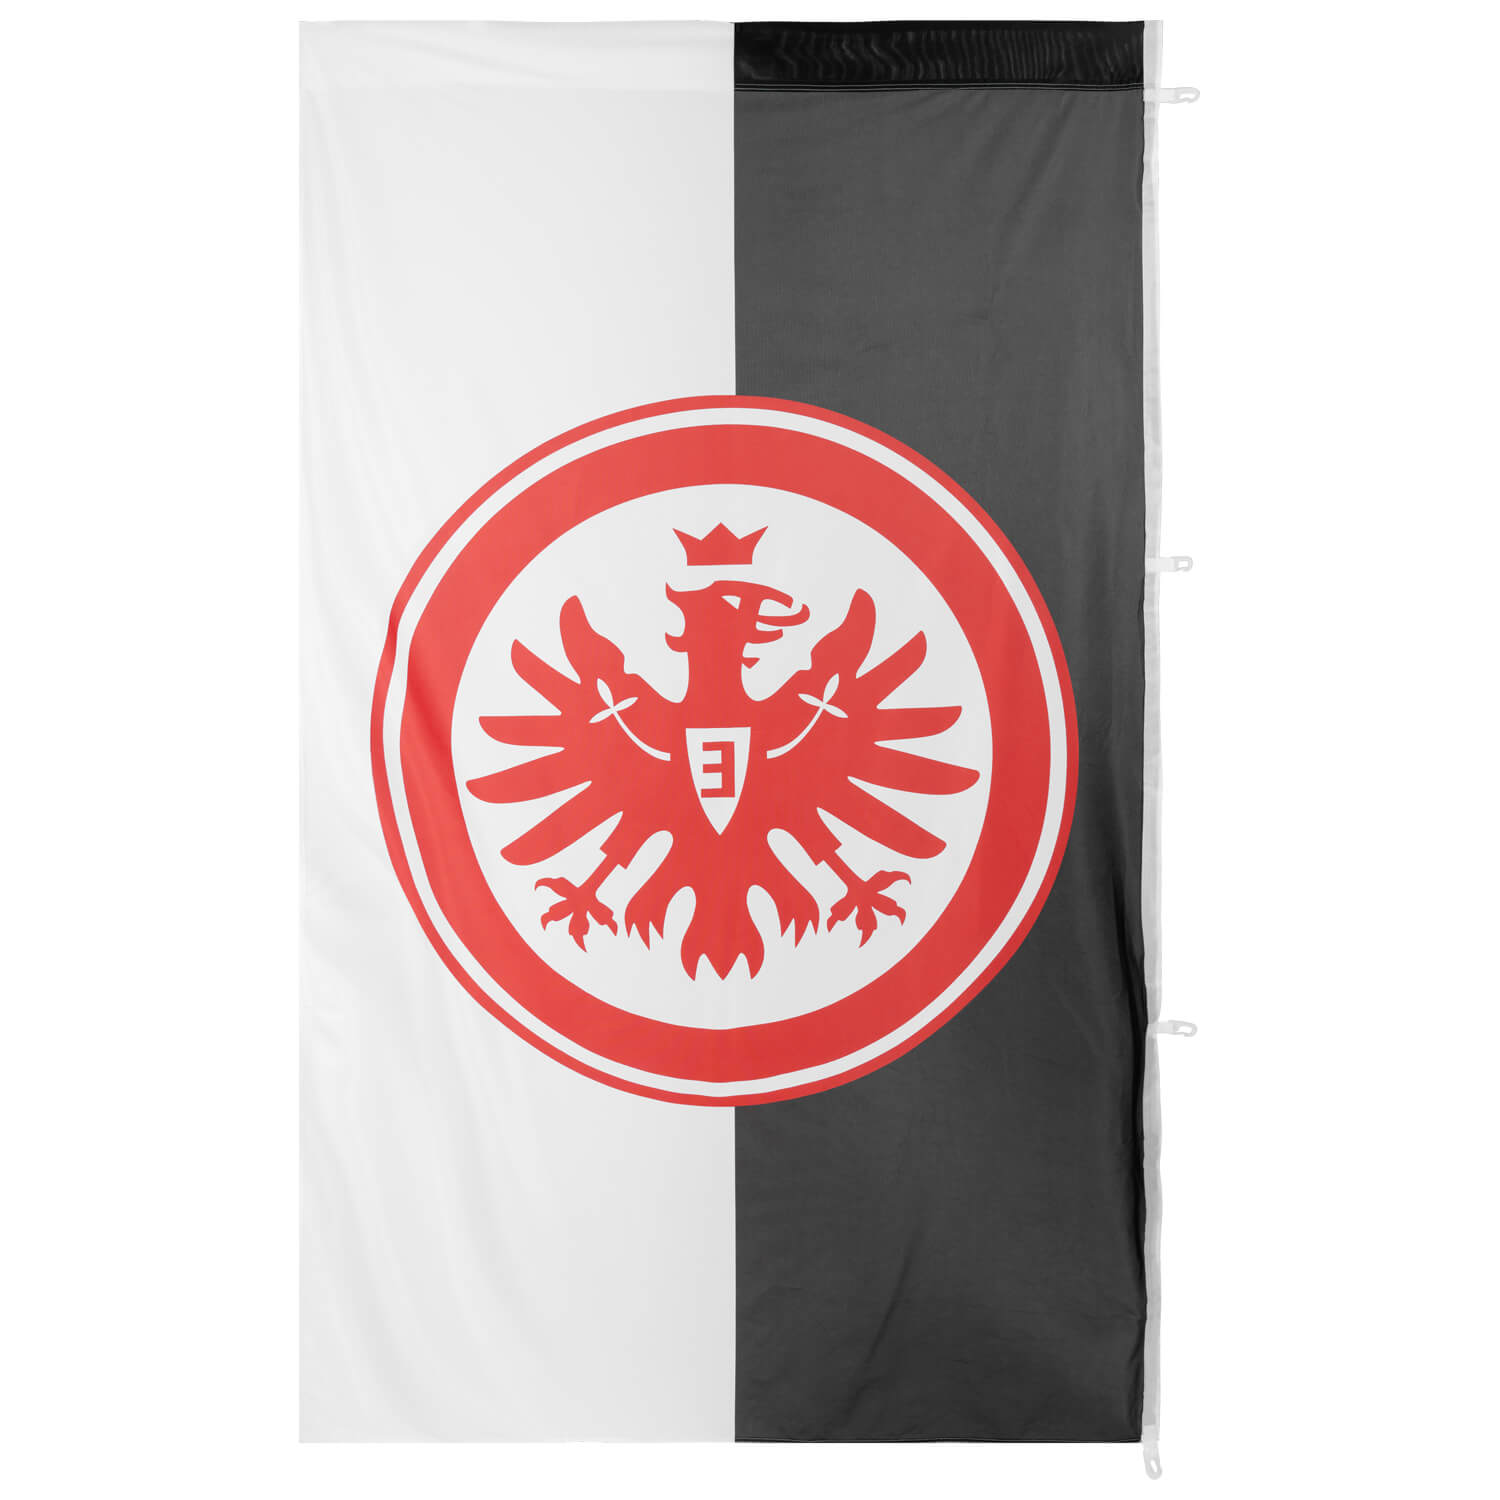 Bild 2: Hissfahne Logo Schwarz/Weiss 150 x 250cm